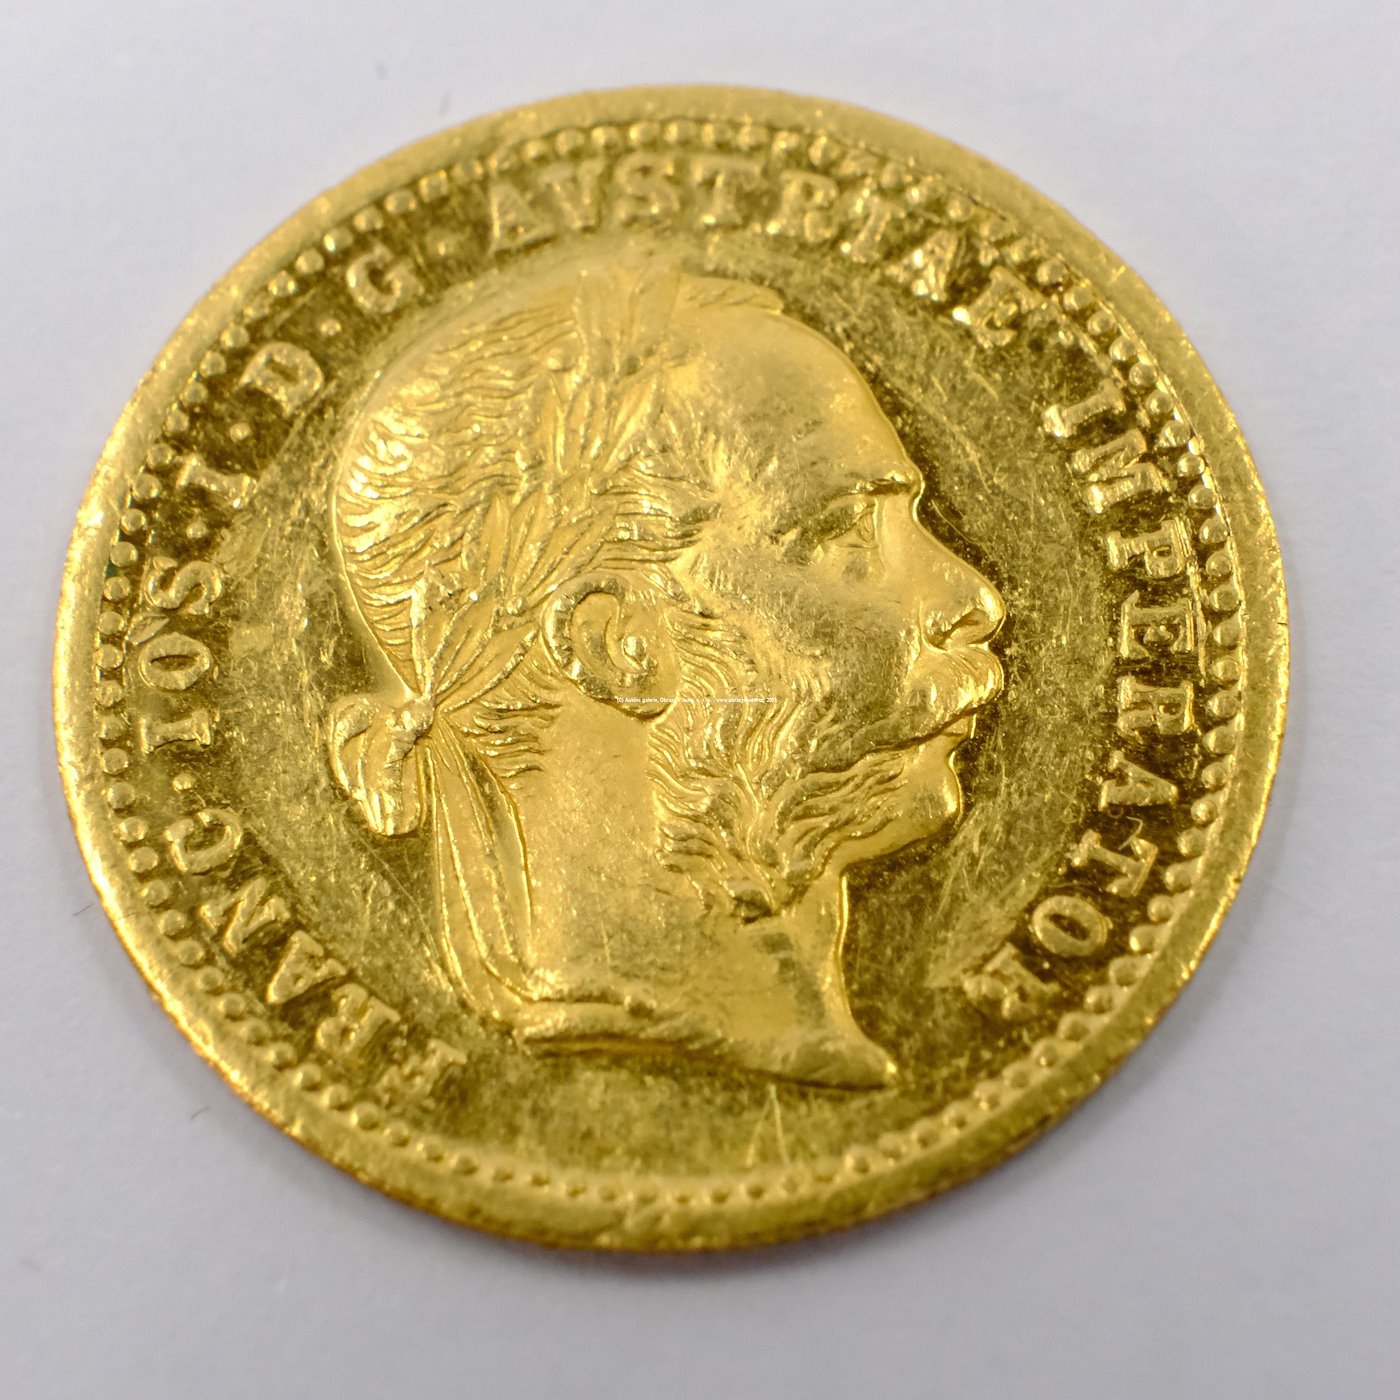 .. - Rakousko Uhersko zlatý 1 dukát 1902. Zlato 986/1000, hrubá hmotnost mince 3,491g